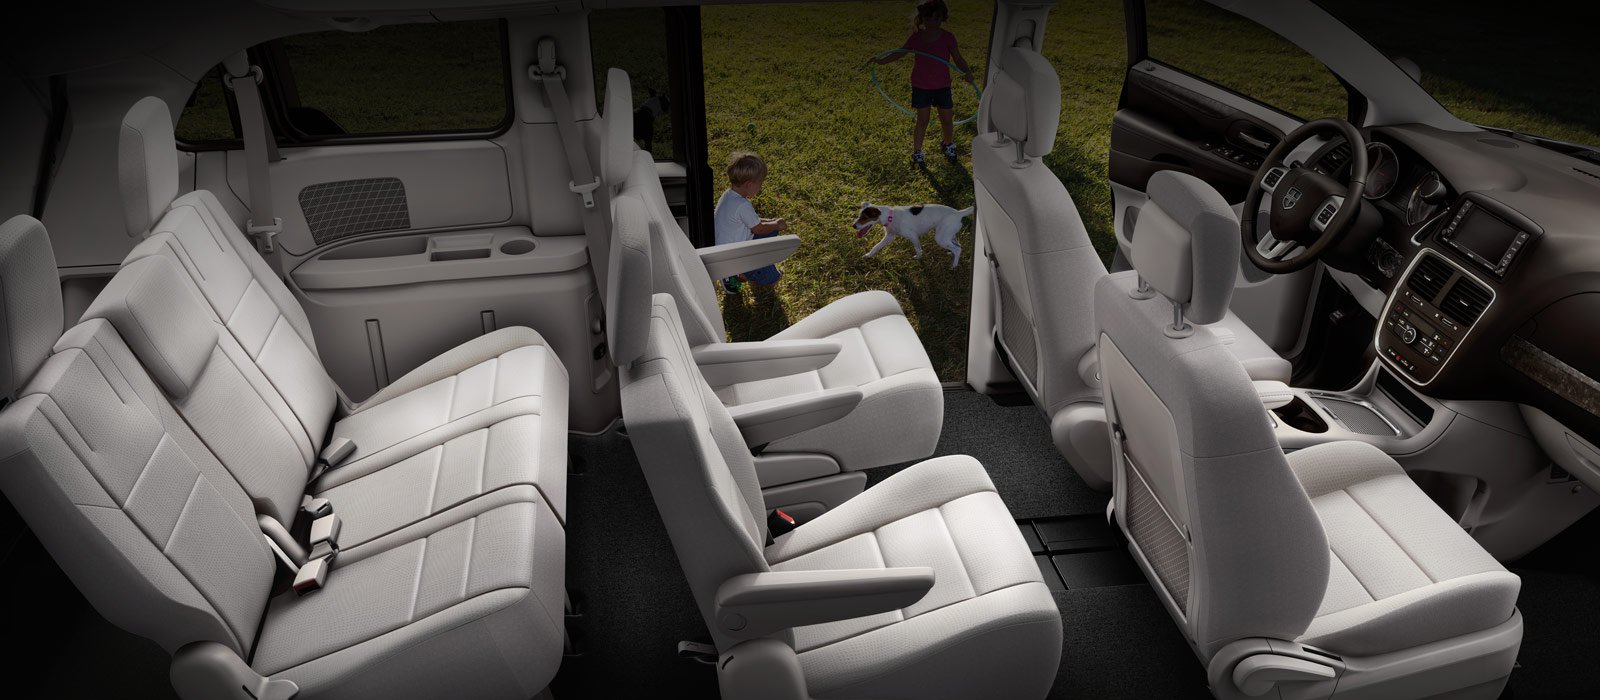 2017 Dodge Grand Caravan interior specs